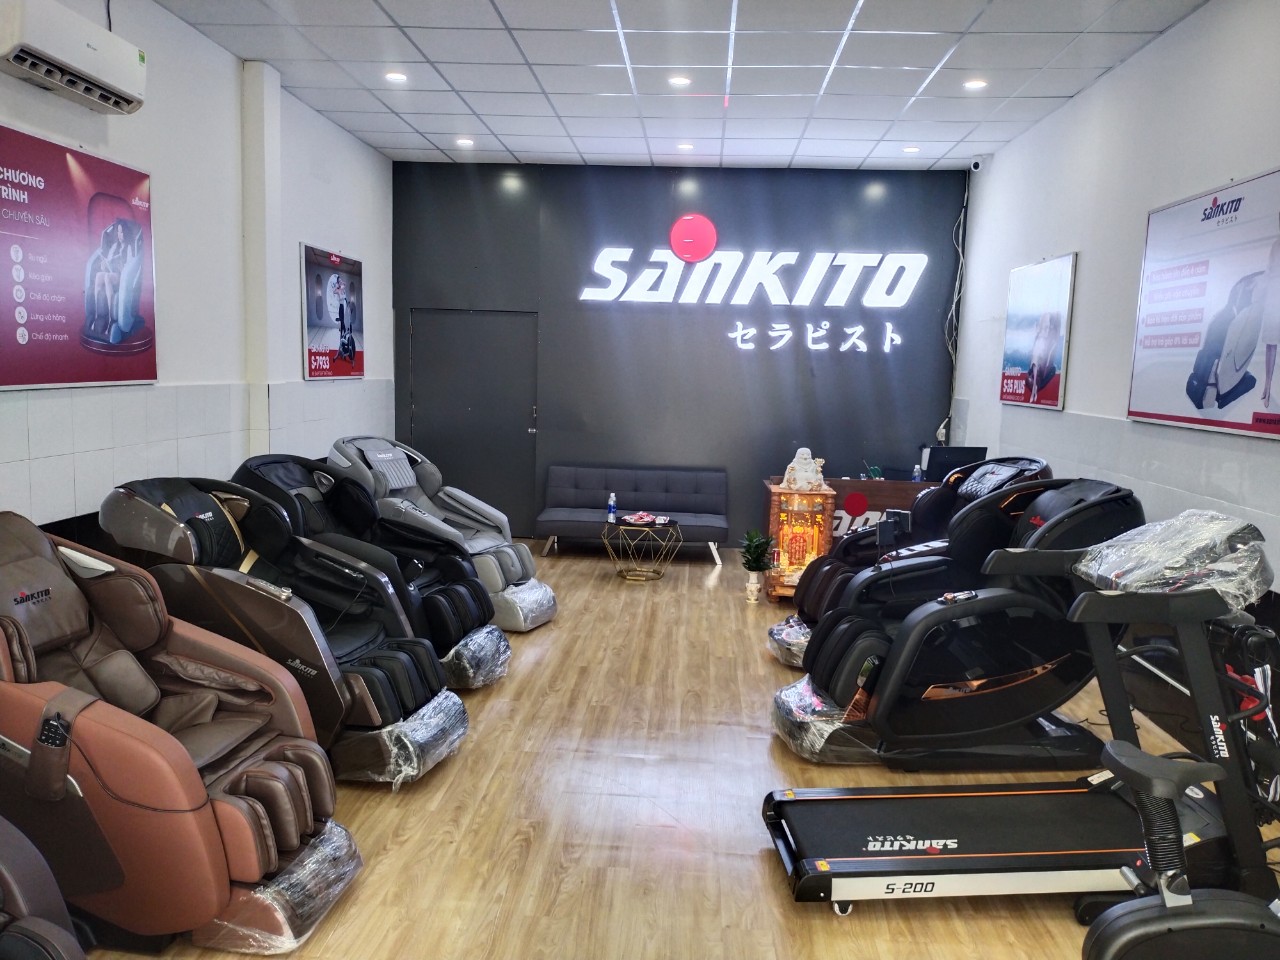 Sankito - Địa chỉ bán máy chạy bộ Bình Dương nâng dốc tự động